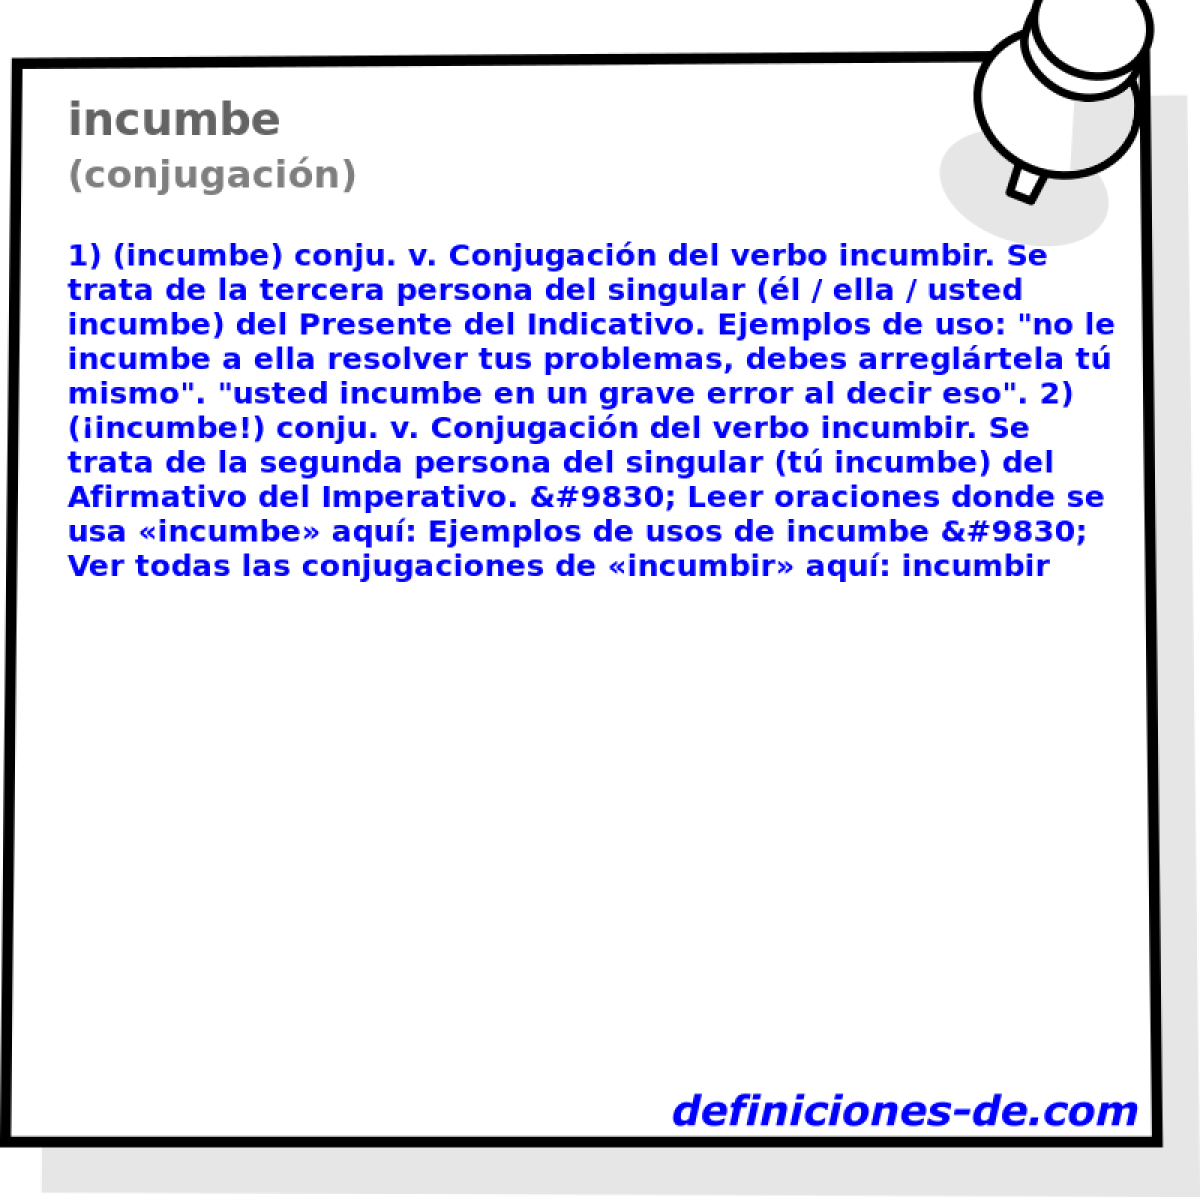 incumbe (conjugacin)